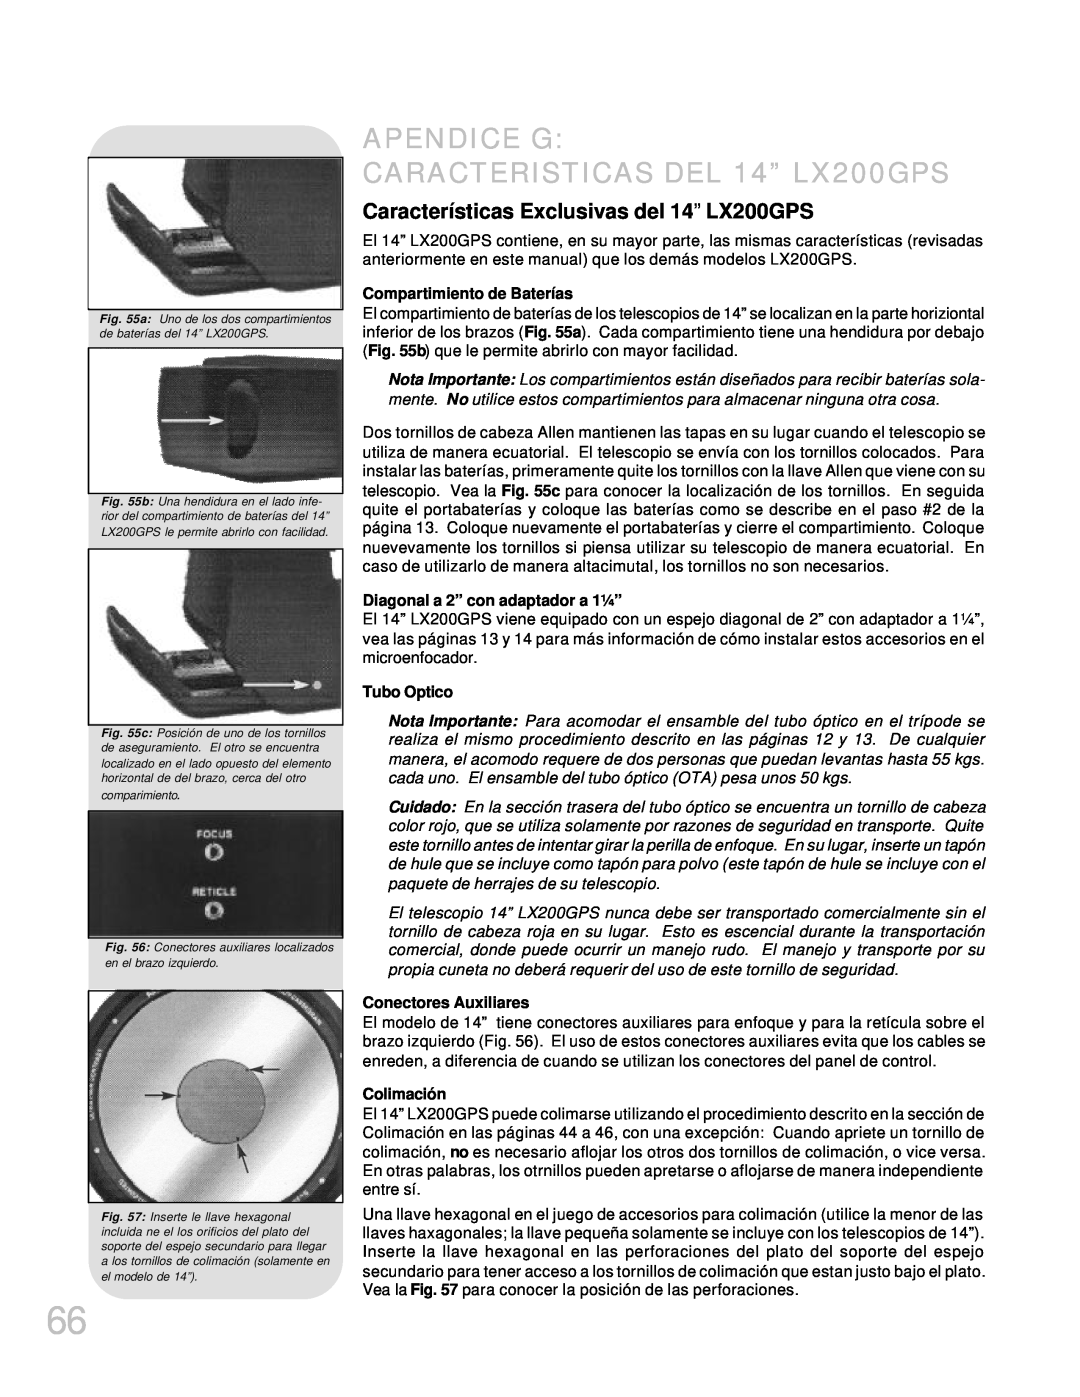 Meade APENDICE G CARACTERISTICAS DEL 14” LX200GPS, Características Exclusivas del 14” LX200GPS, Tubo Optico, Colimación 